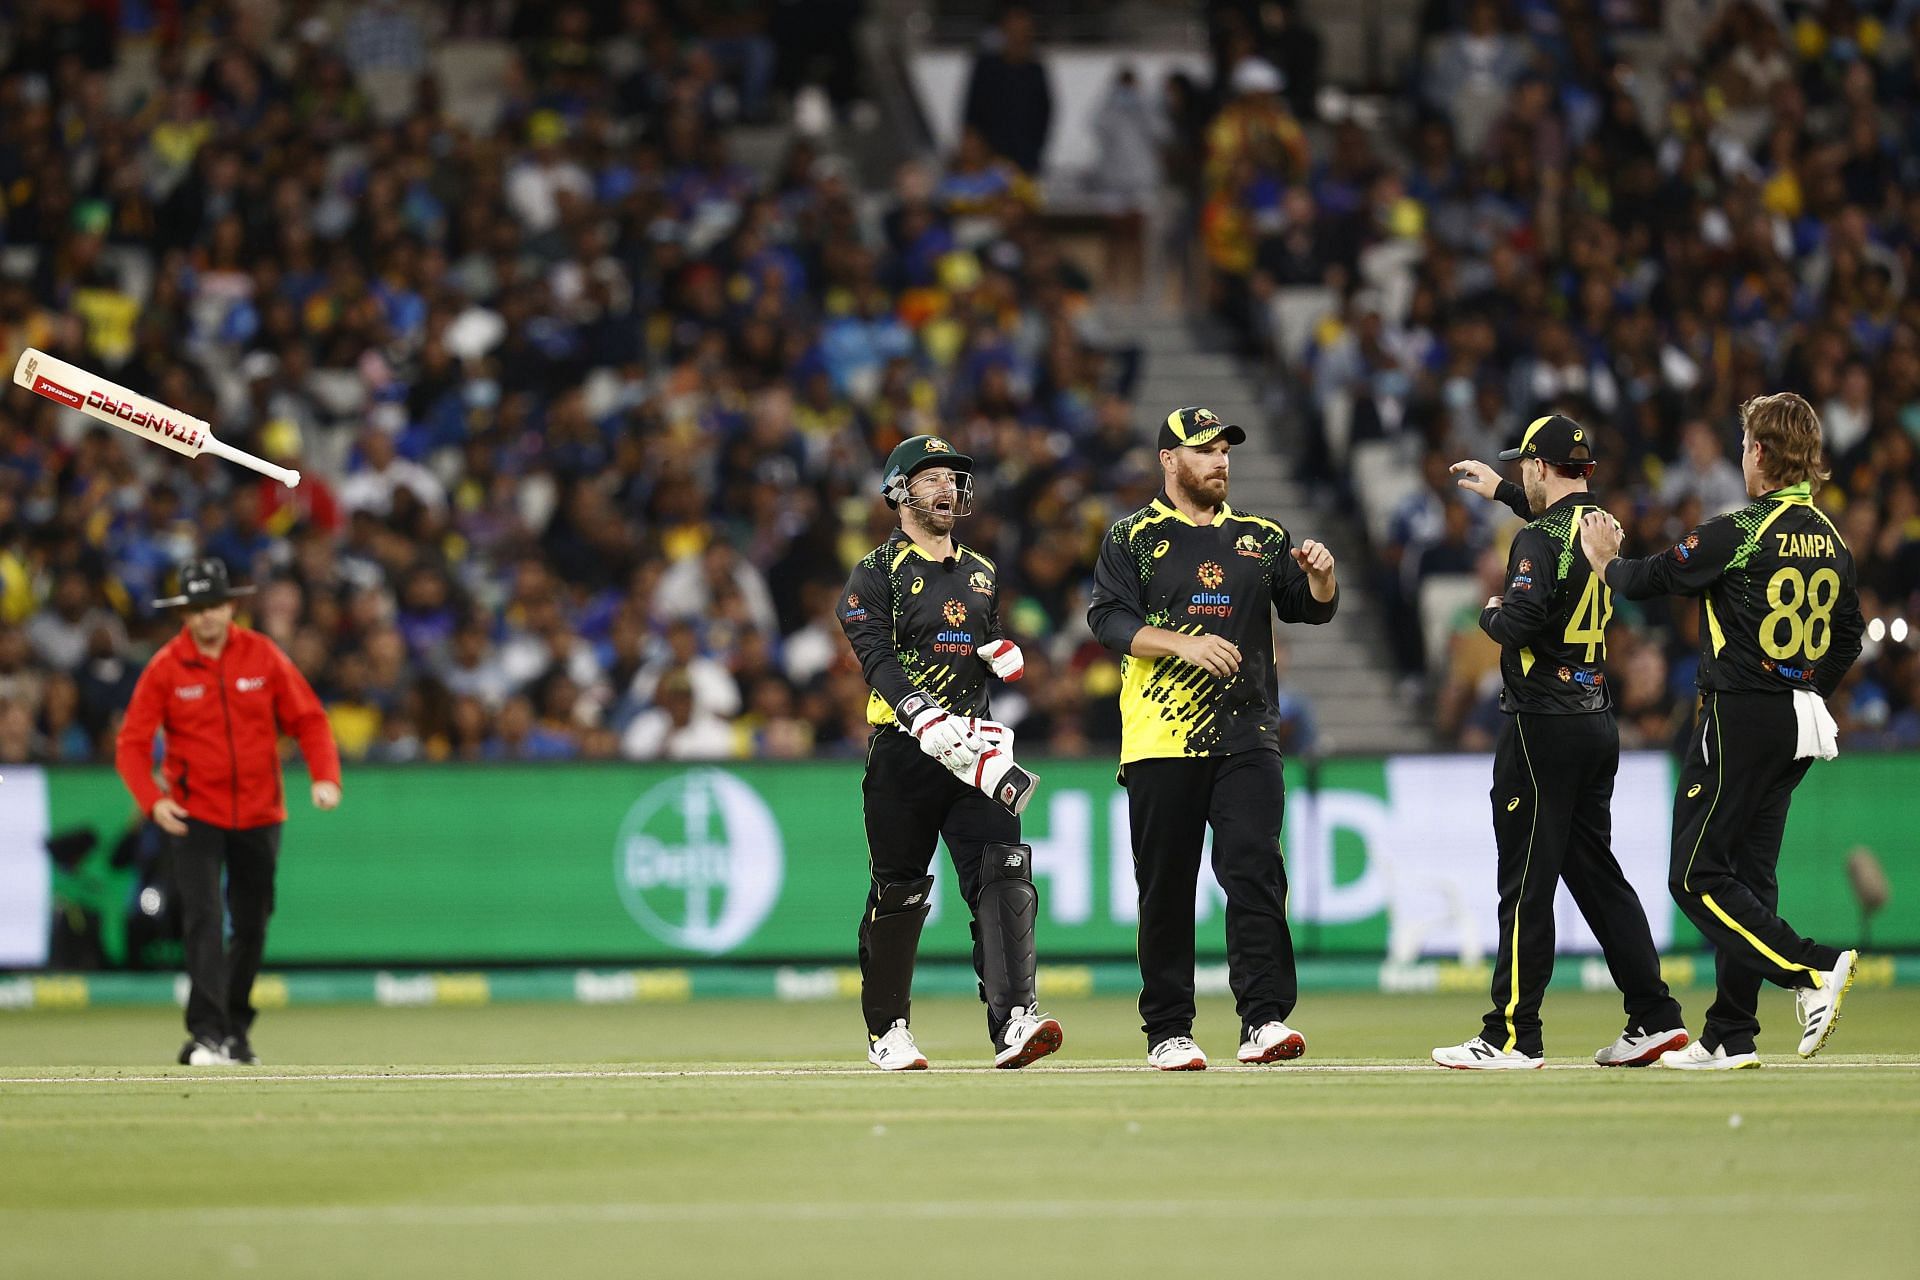 Australia v Sri Lanka - T20 Series: Game 4 (Image courtesy: Getty Images)